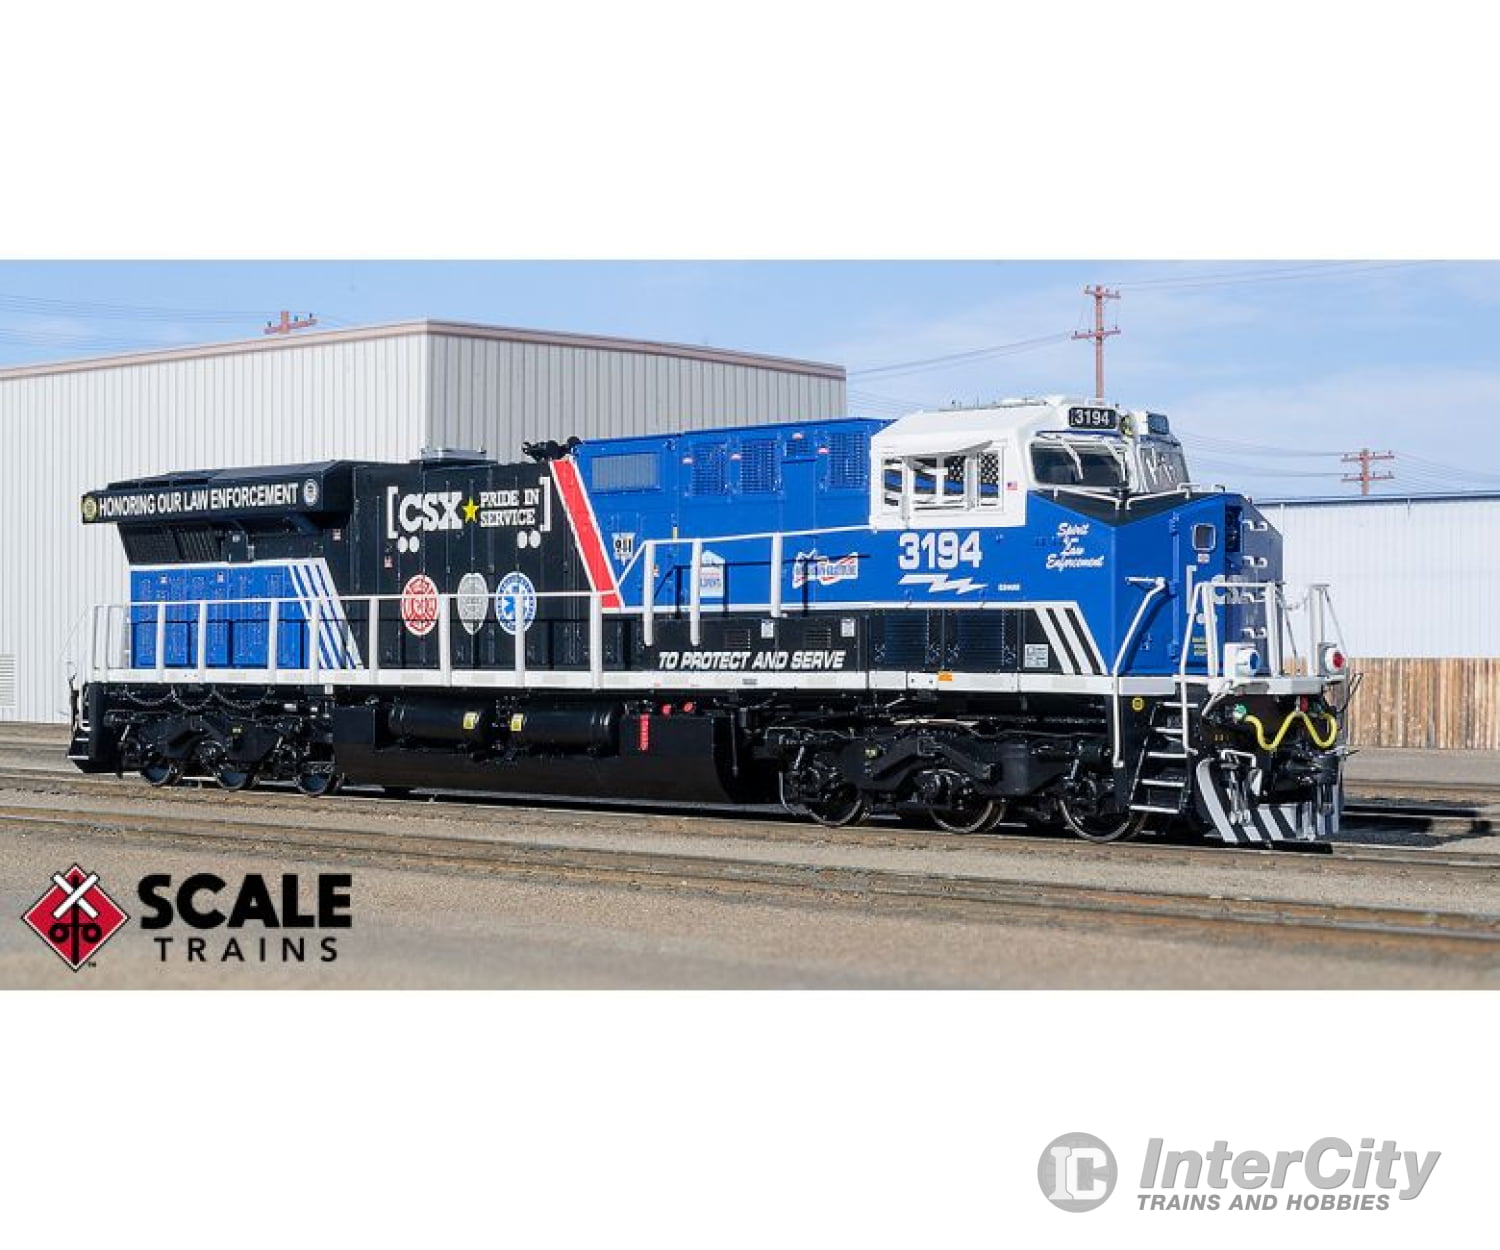 Scale Trains Sxt32294 Cxs Transportation Our Law Enforcement Rivet Counter Rd# 3194 Locomotives